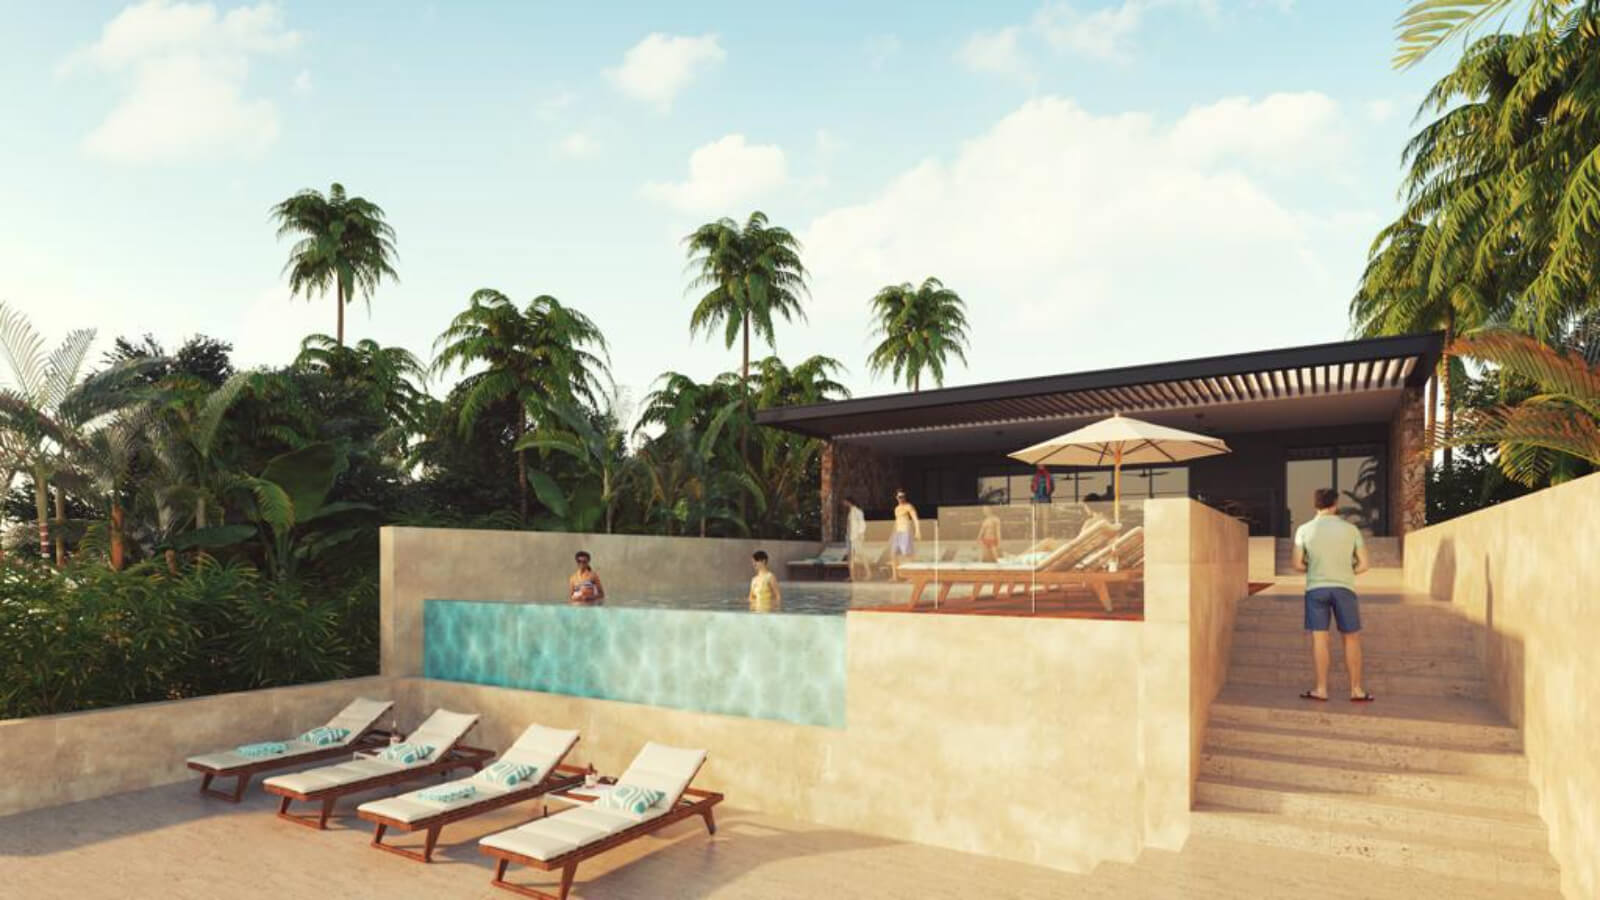 Condo with roof top pool, barbecue area, business center, concierge, Villas La Hacienda for sale, Merida North Zone